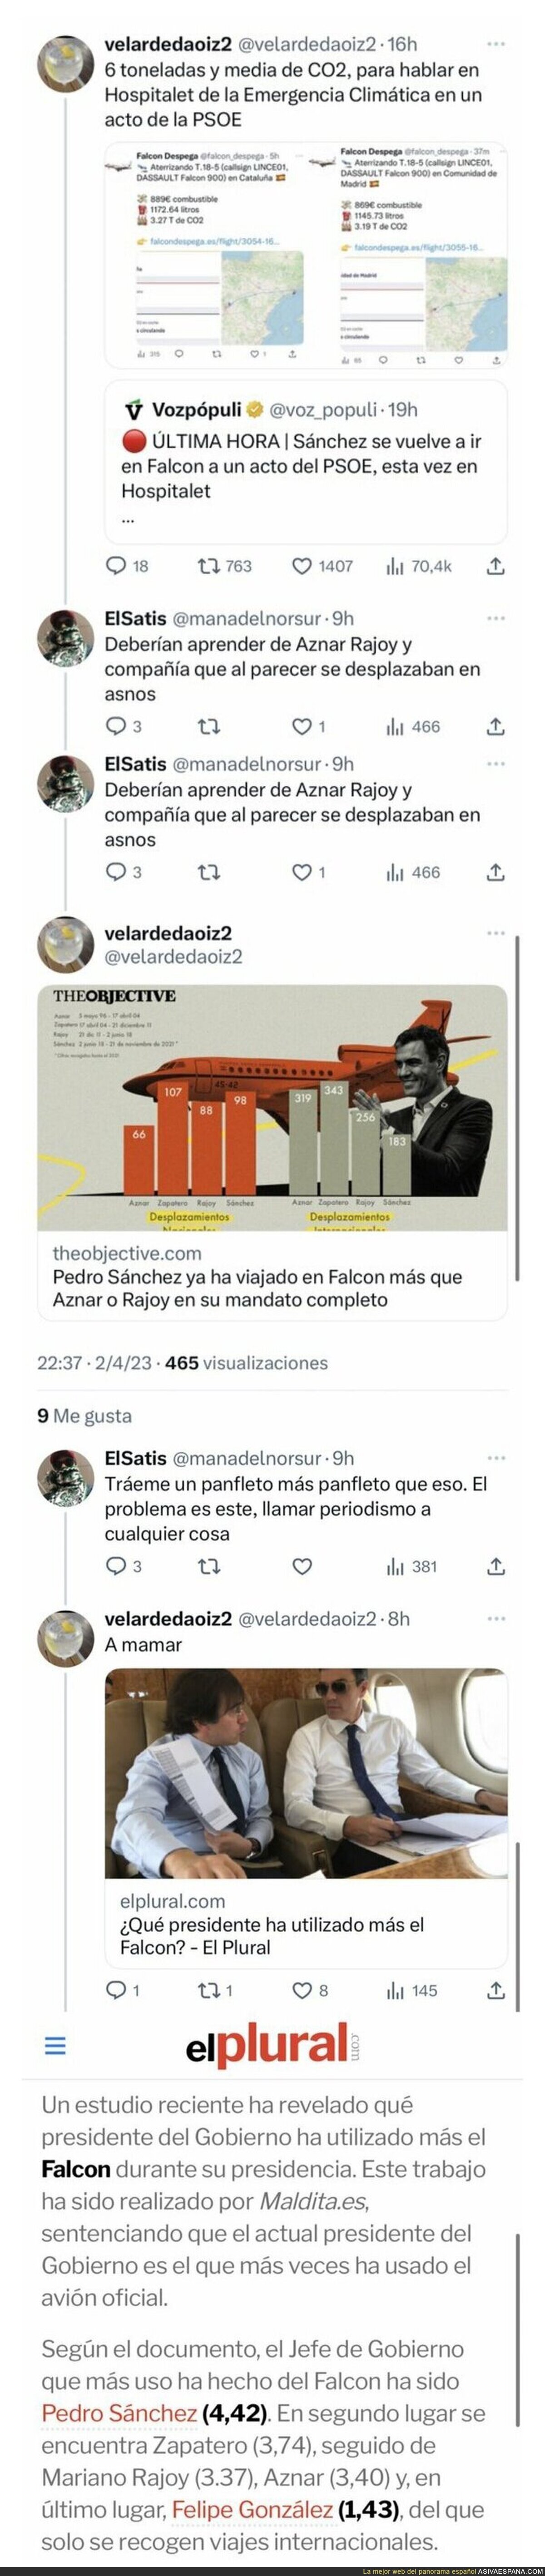 Pedro Sánchez usa más el Falcon que cualquier otro presidente